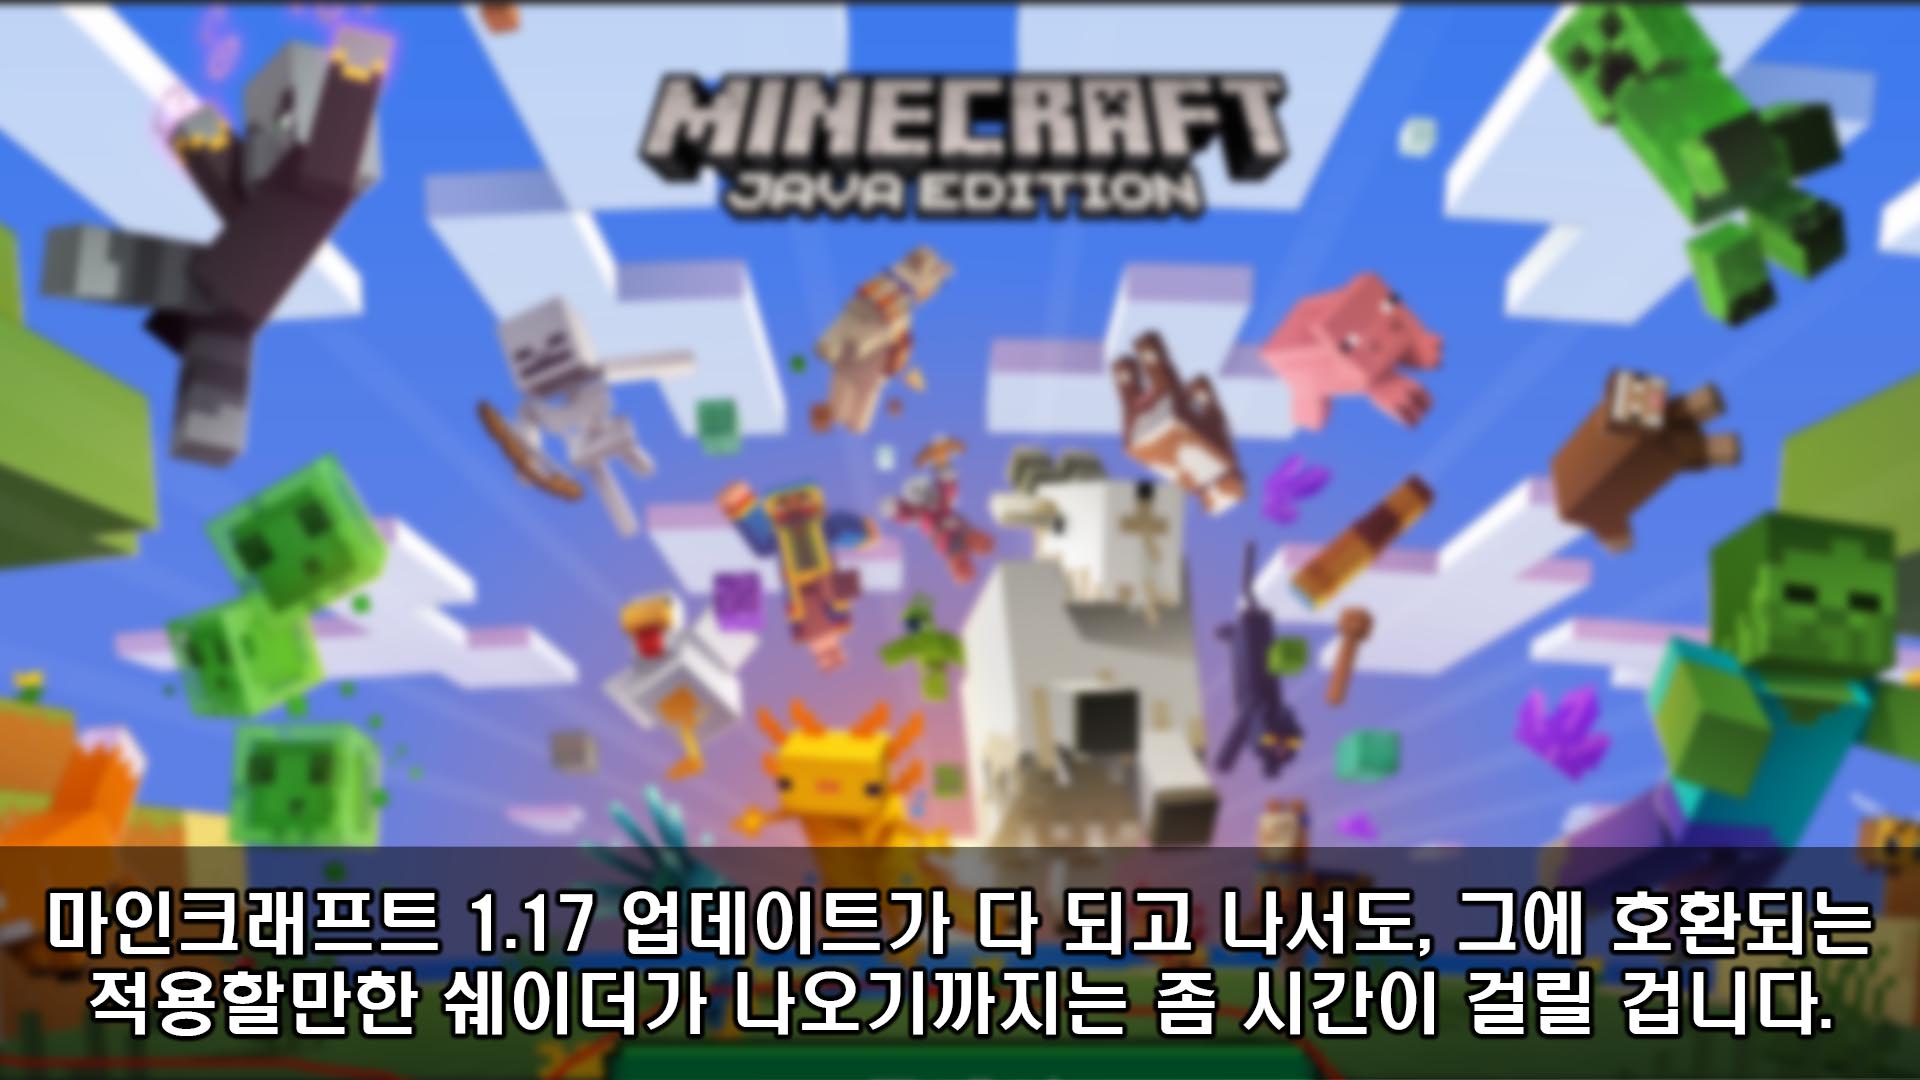 1.17 마인 apk 크래프트 11 Download Minecraft